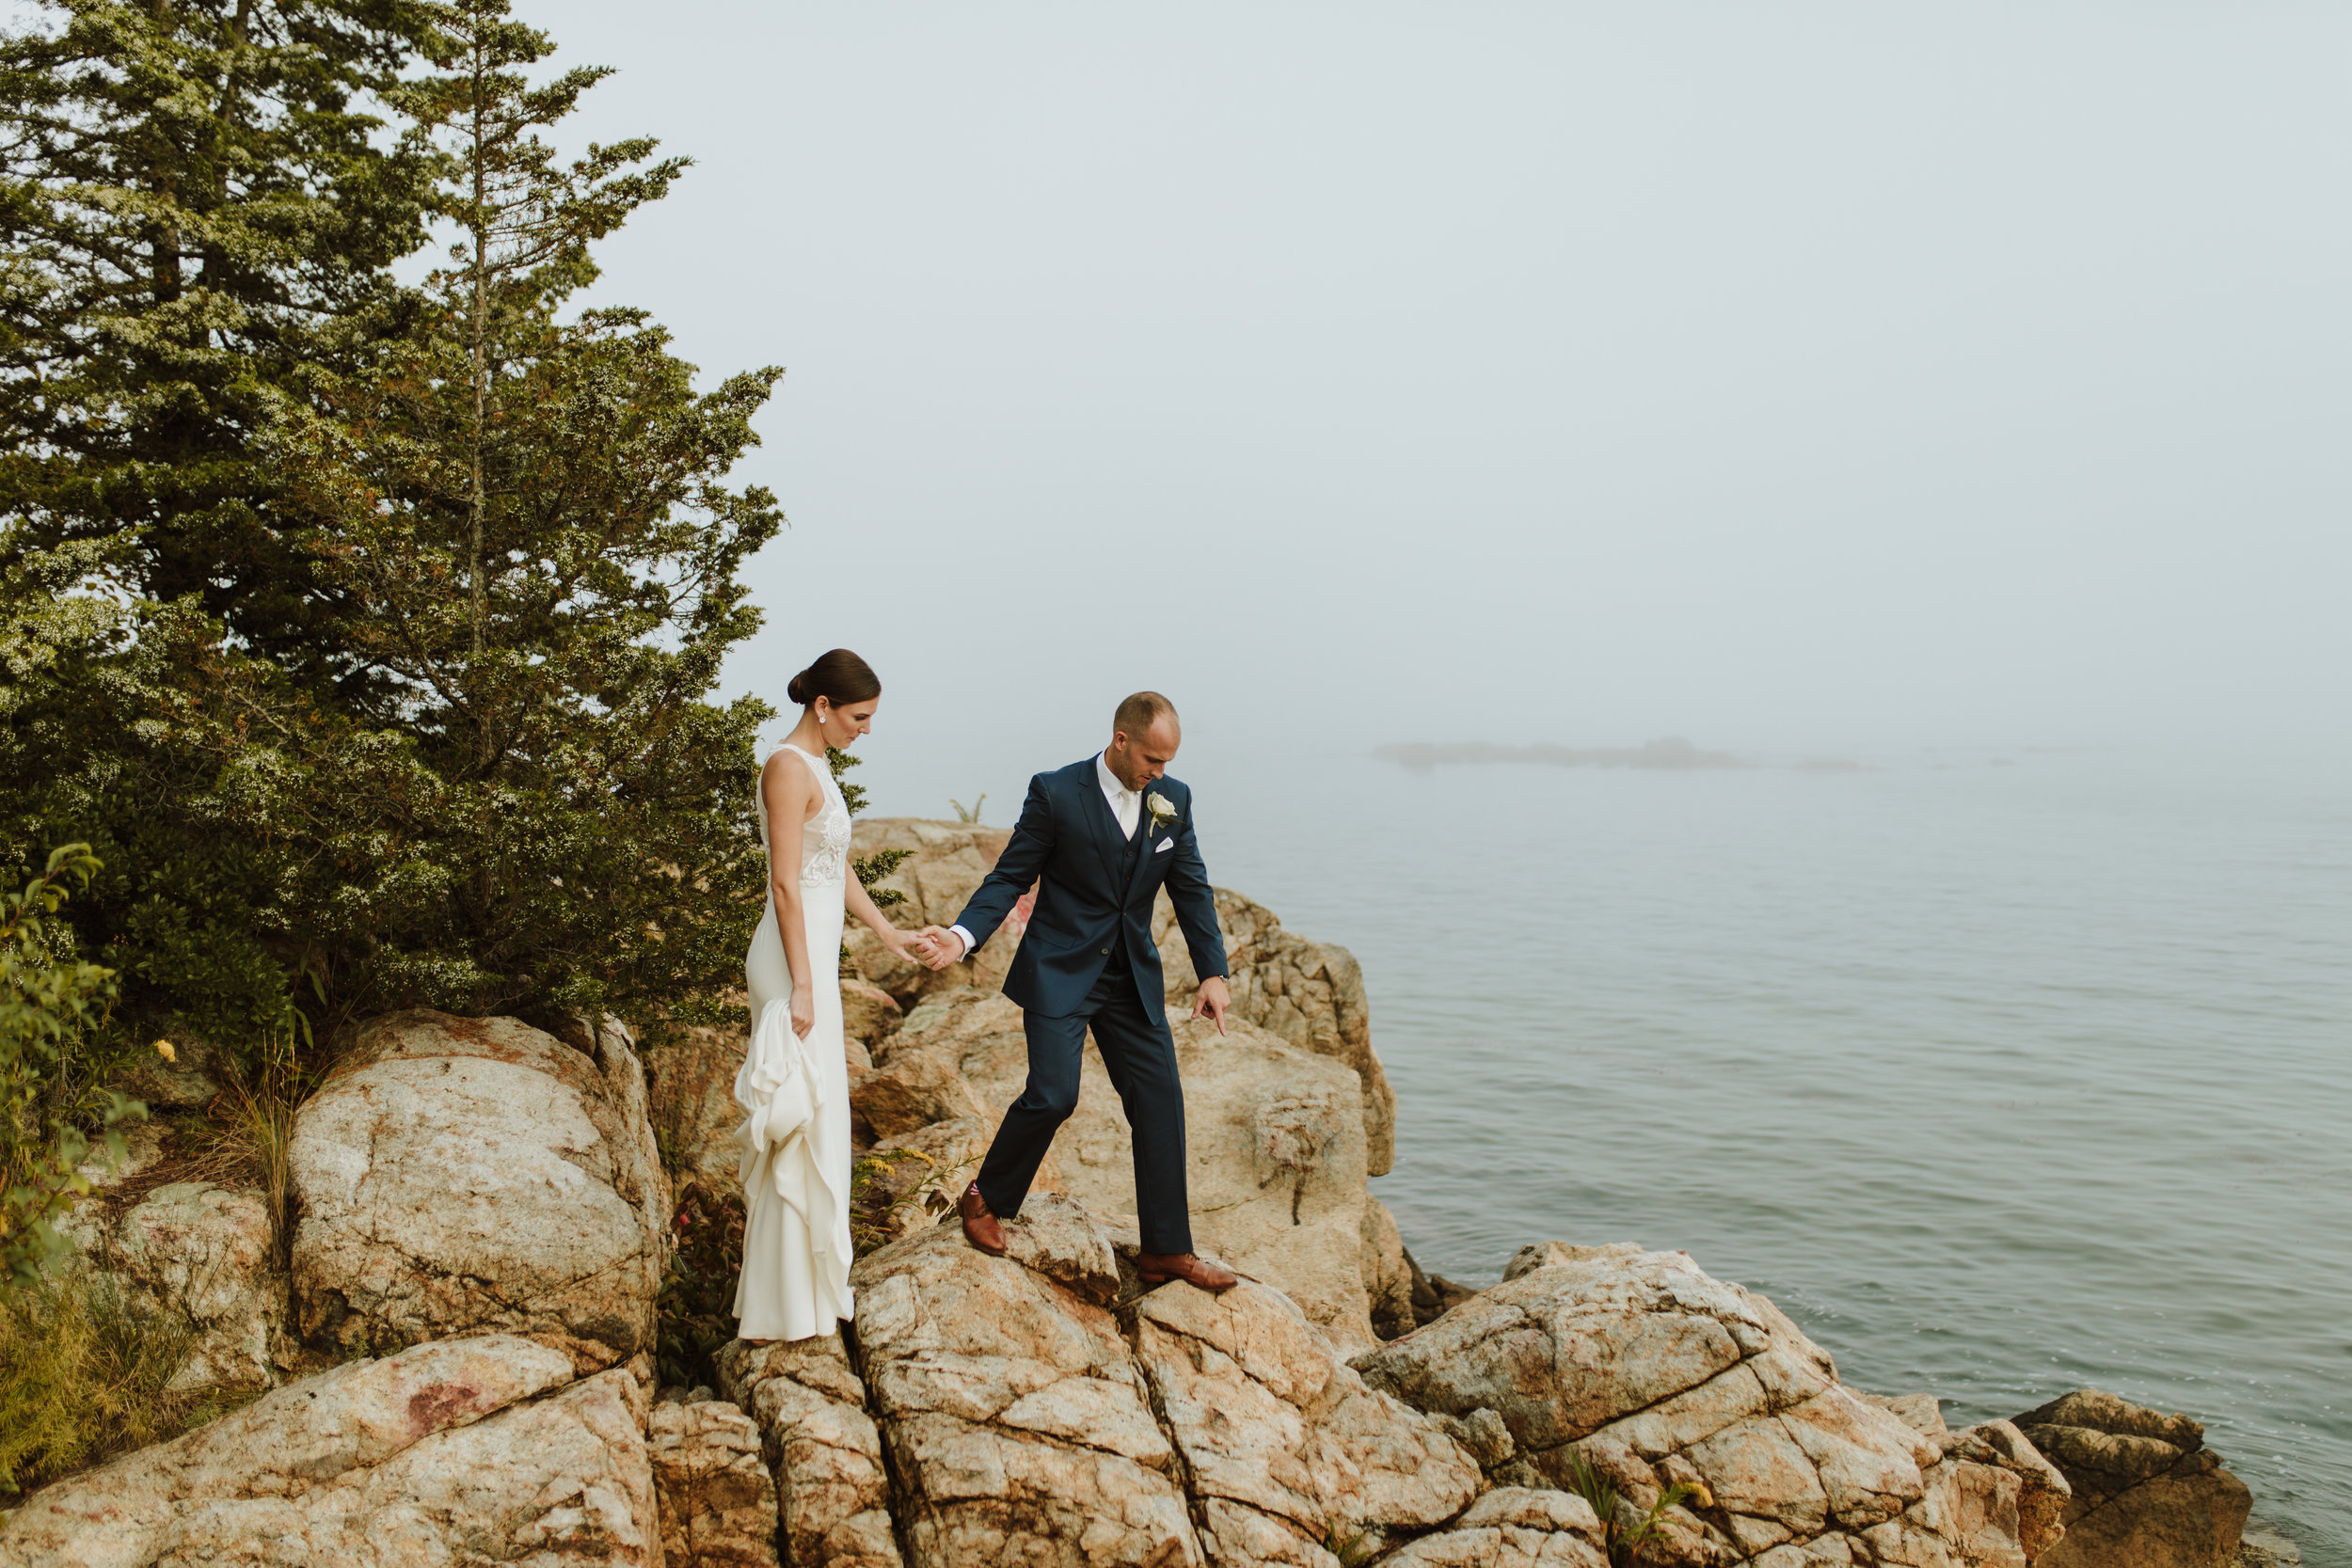 Misselwood Wedding Photo Bride and Groom by the ocean